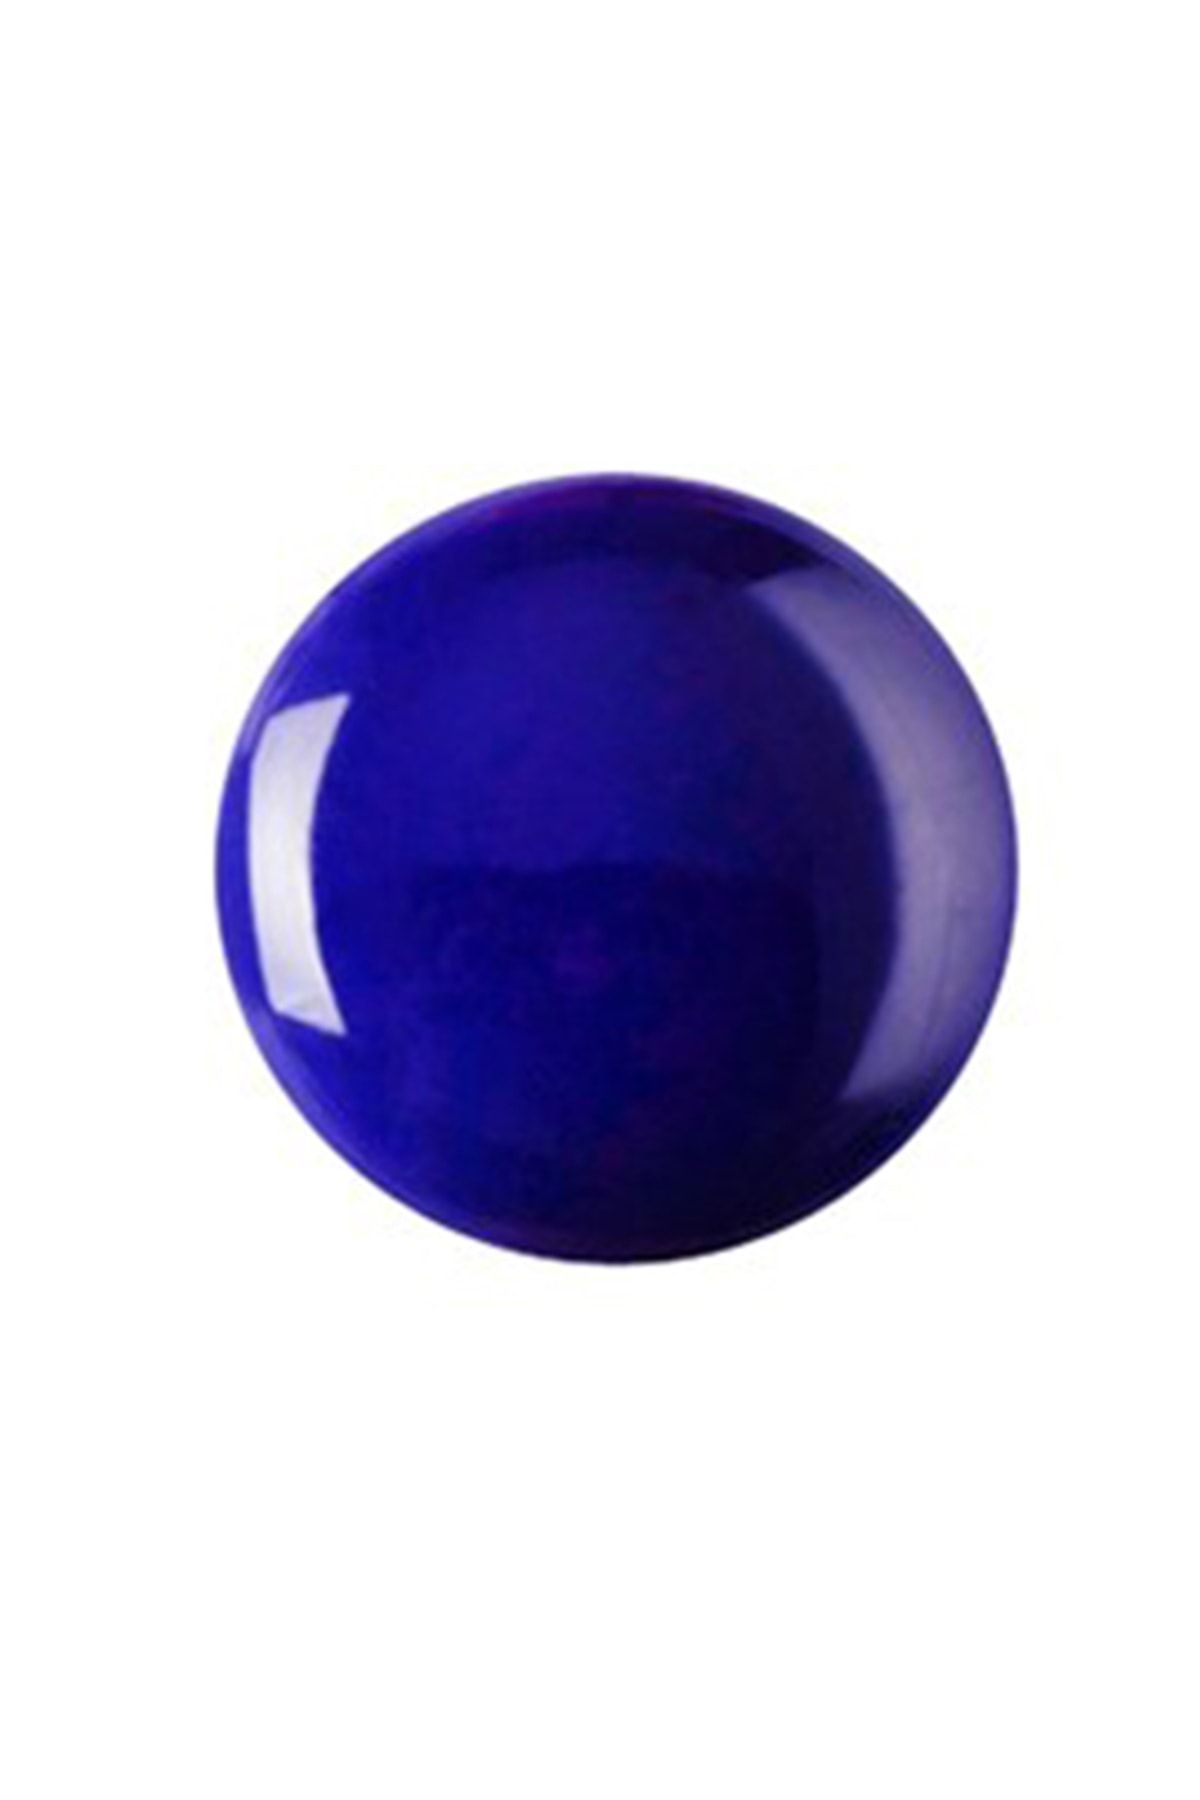 Refsan Renkli Sır 22575 Zem Mavisi | 1 kg